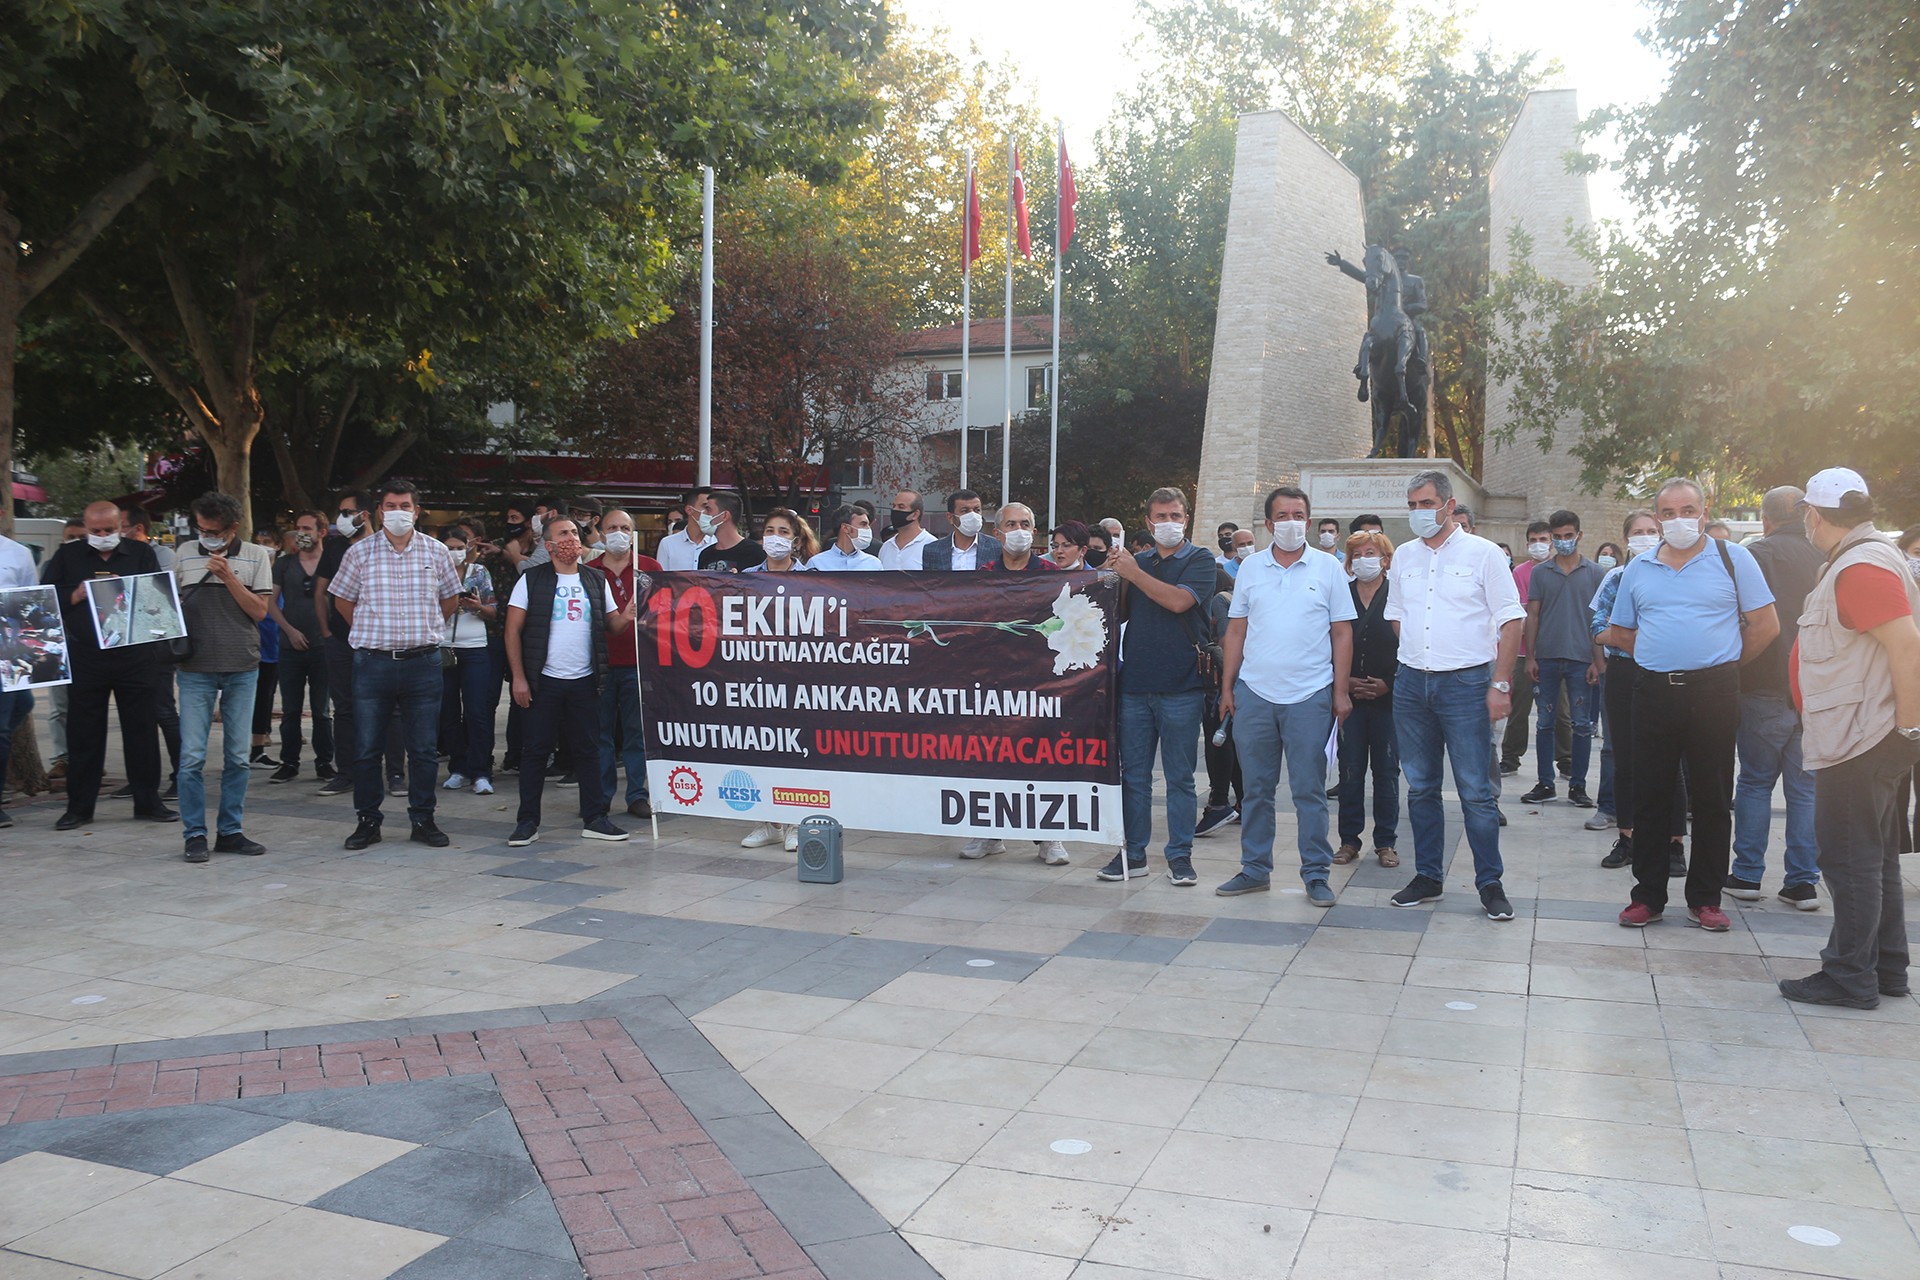 10 Ekim Ankara Katliamı'nda yaşamını yitirenler, katliamın 5'inci yıl dönümünde Denizli'de düzenlenen etkinlikte anıldı.